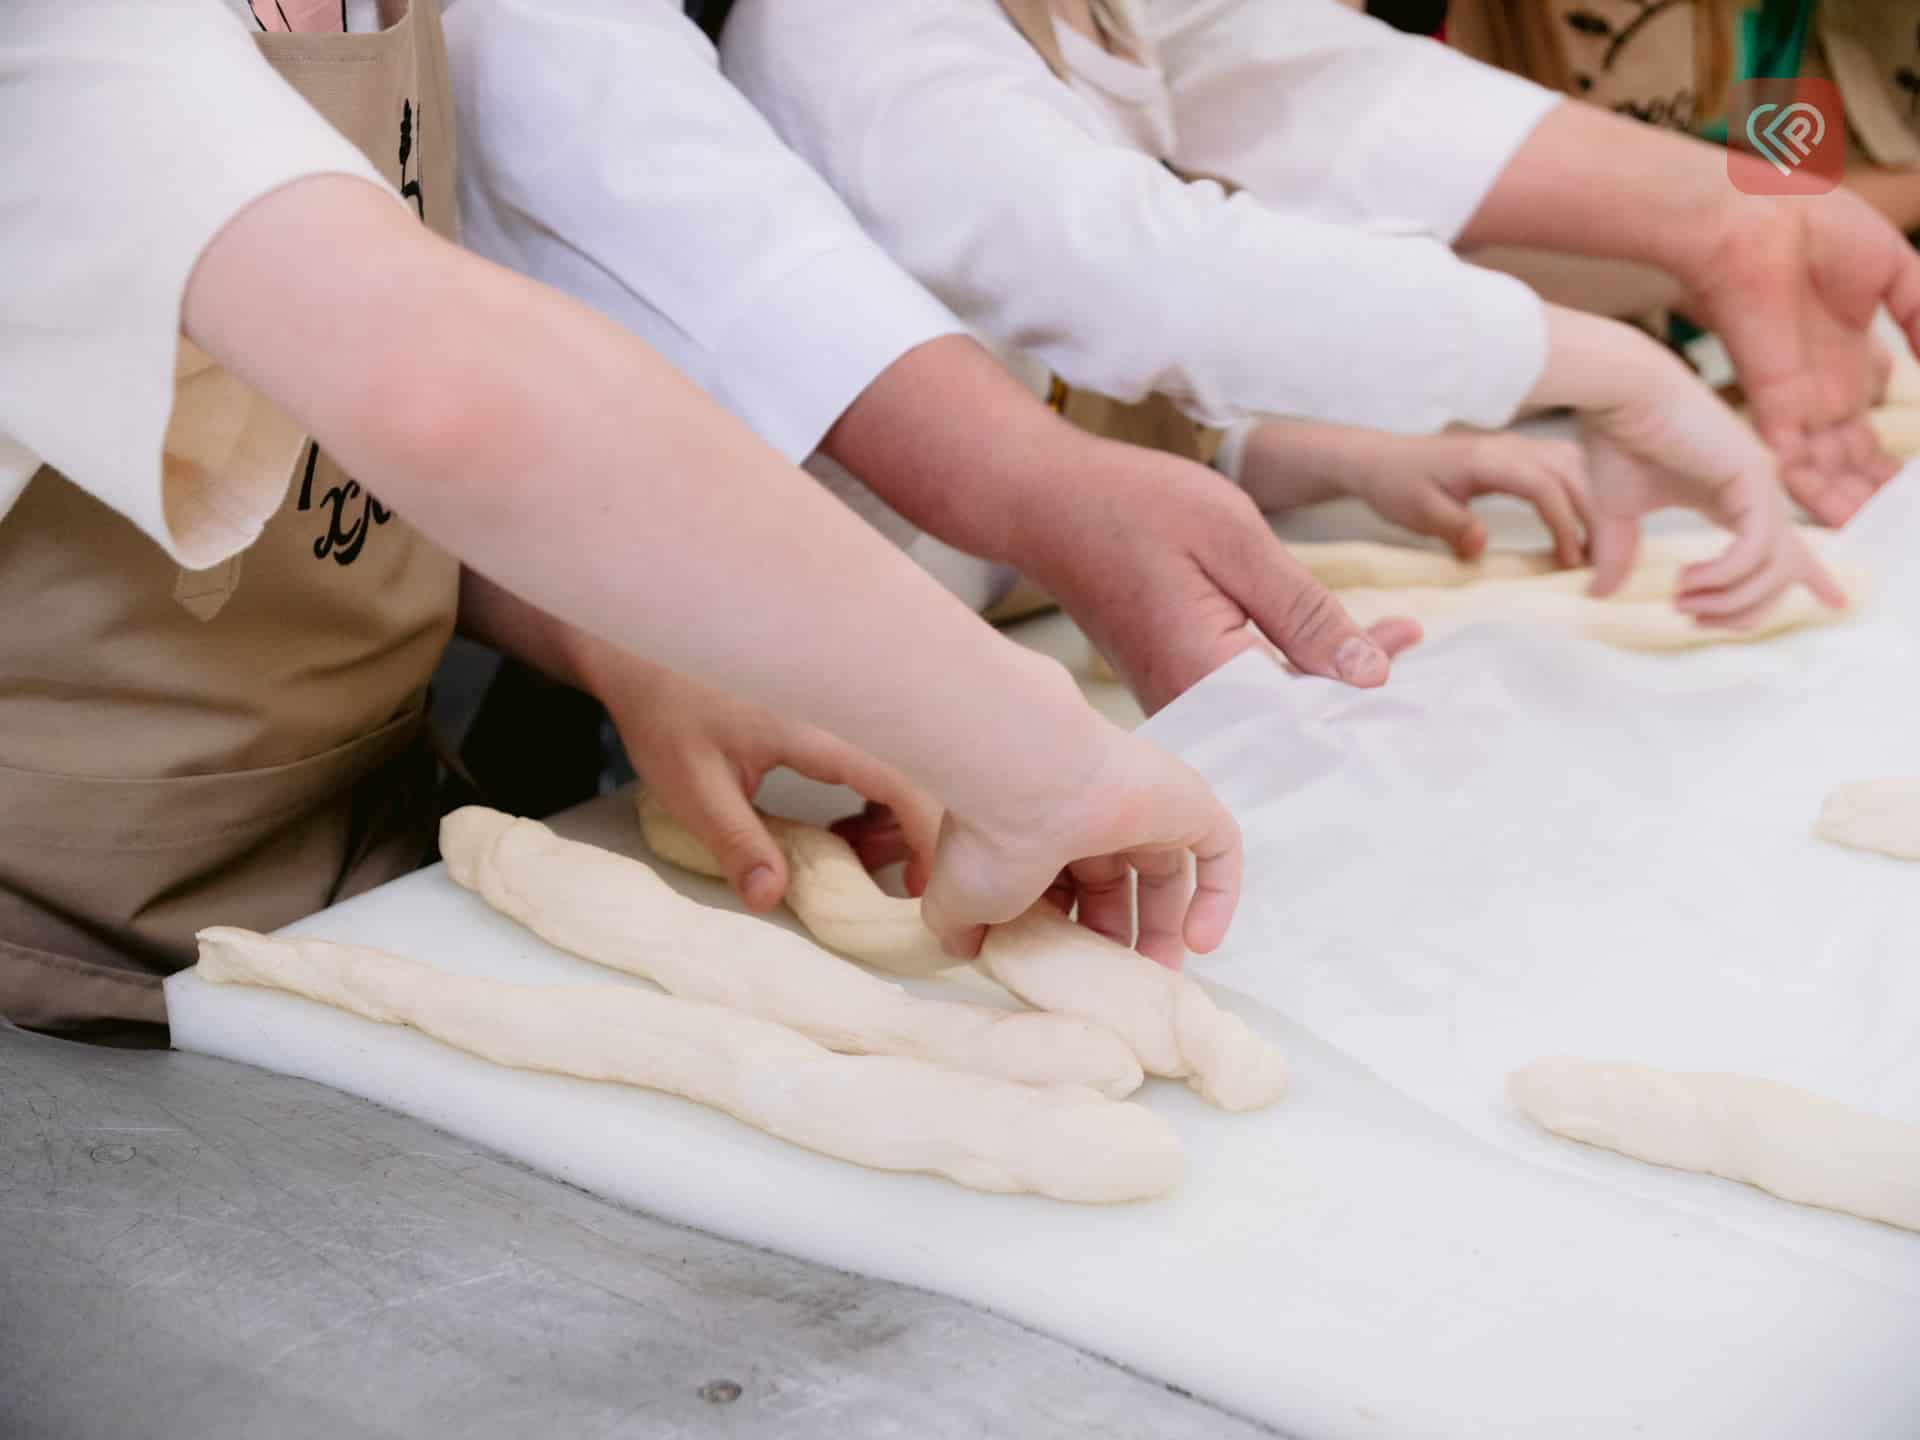 Для дітей провели екскурсію та майстер-клас на переяславському хлібозаводі (відео)